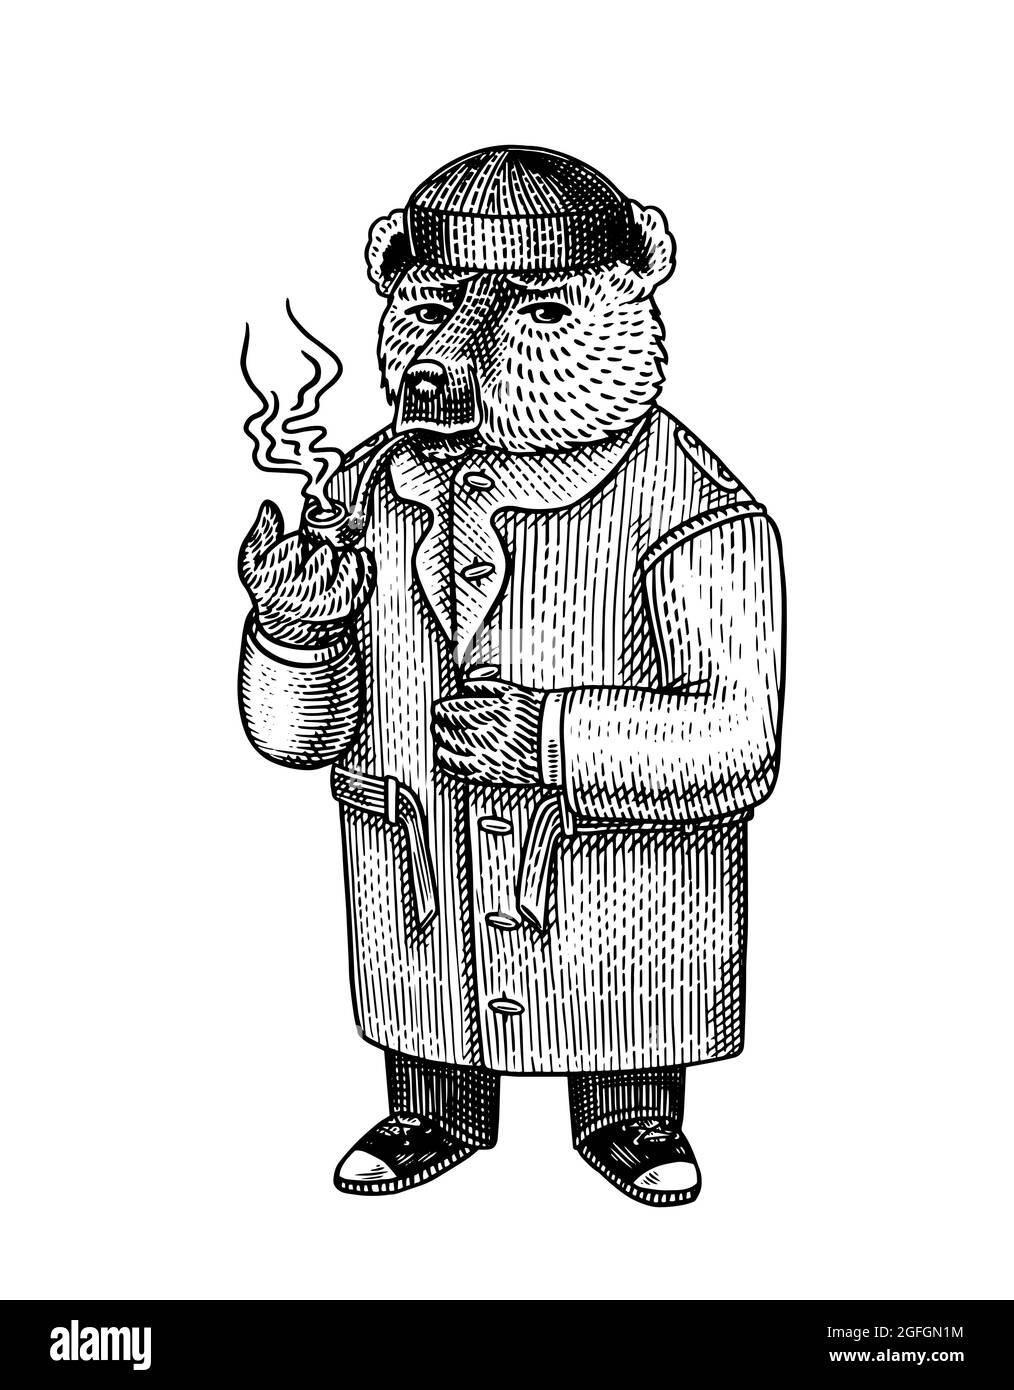 L'ours fume un tuyau. Personnage de mode en hiver, manteau et chapeau de peau de mouton russe. Look rétro vintage. Esquisse dessinée à la main. Vecteur gravé Illustration de Vecteur